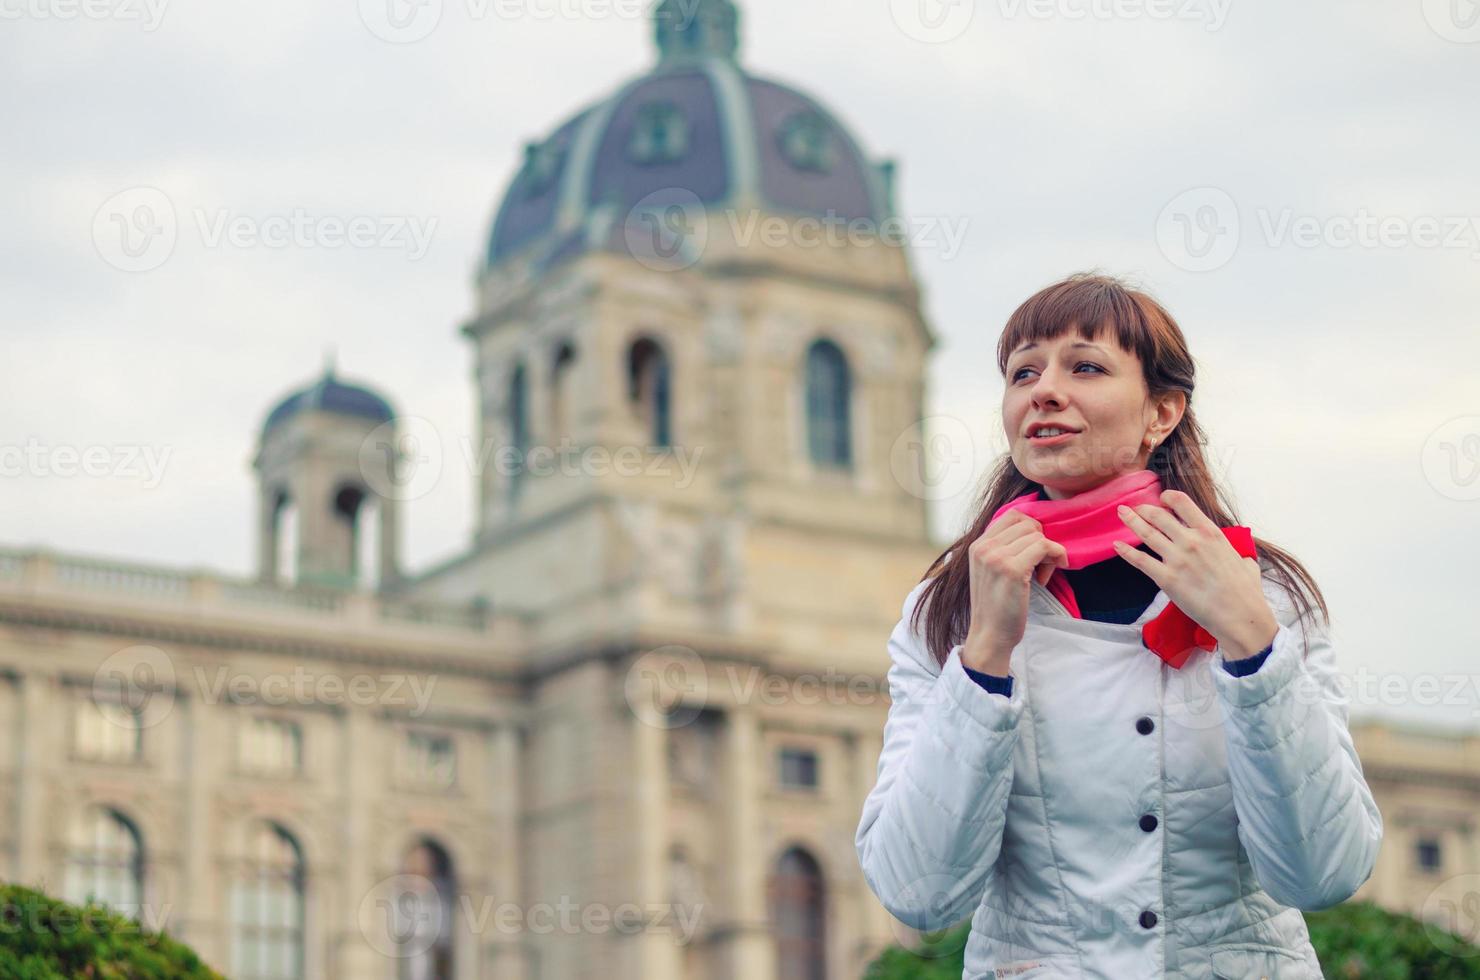 jonge meisjesreiziger met witte jas trekt rode sjaal recht en kijkt weg, kunsthistorisches museum foto